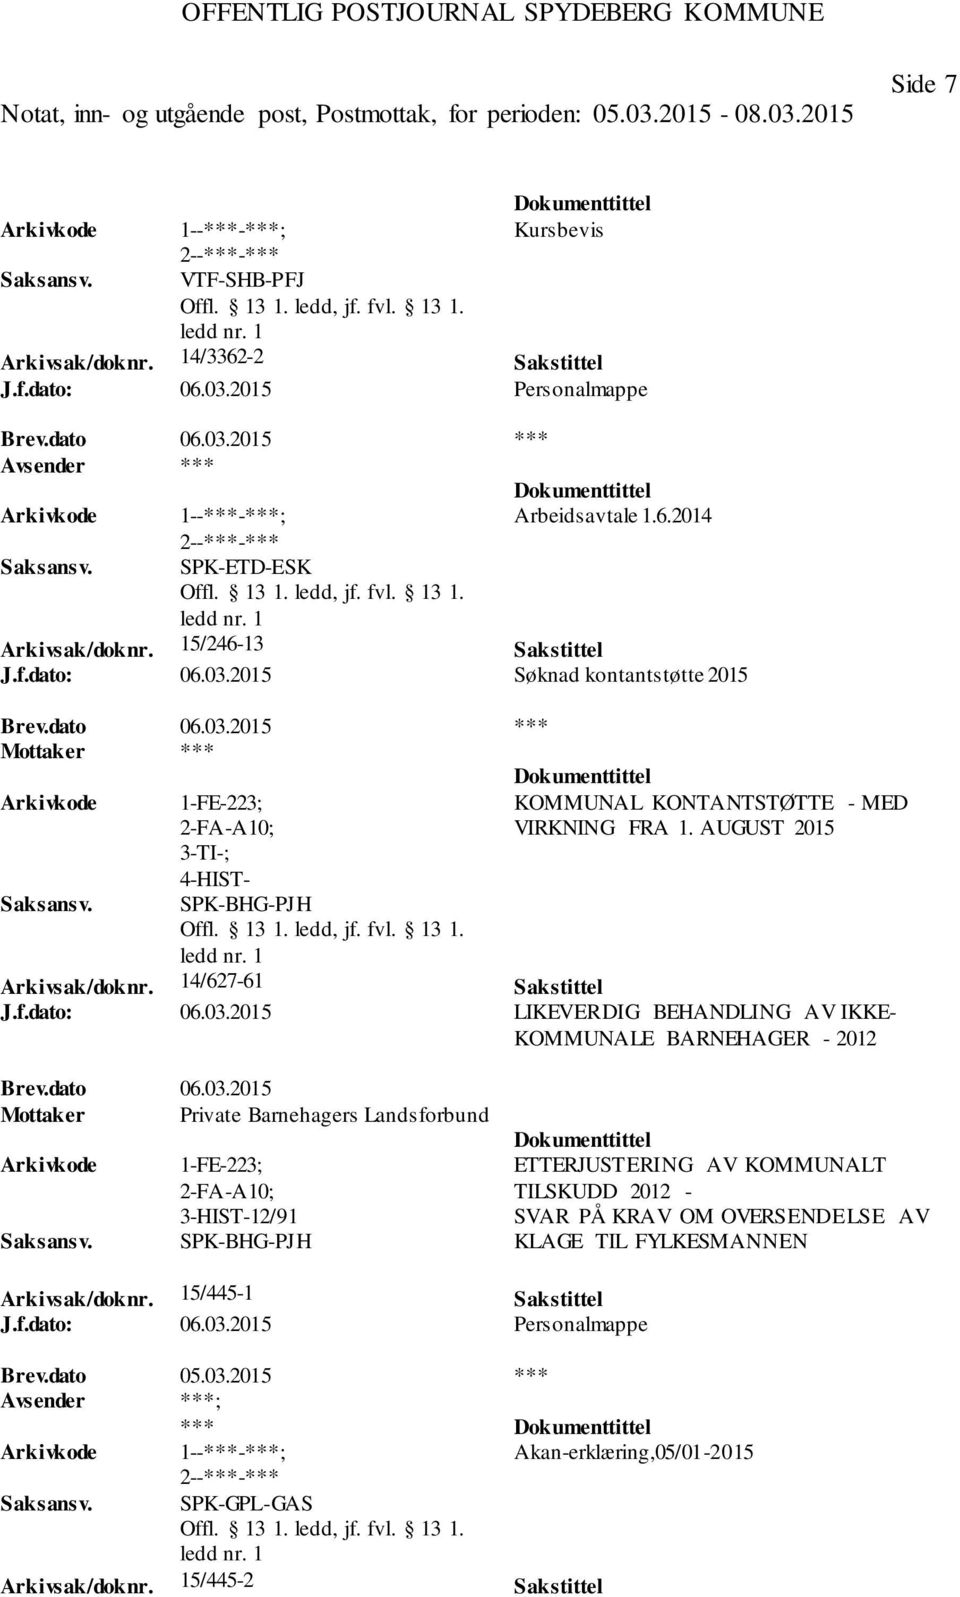 03.2015 LIKEVERDIG BEHANDLING AV IKKE- KOMMUNALE BARNEHAGER - 2012 Mottaker Private Barnehagers Landsforbund 1-FE-223; 2-FA-A10; 12/91 SPK-BHG-PJH ETTERJUSTERING AV